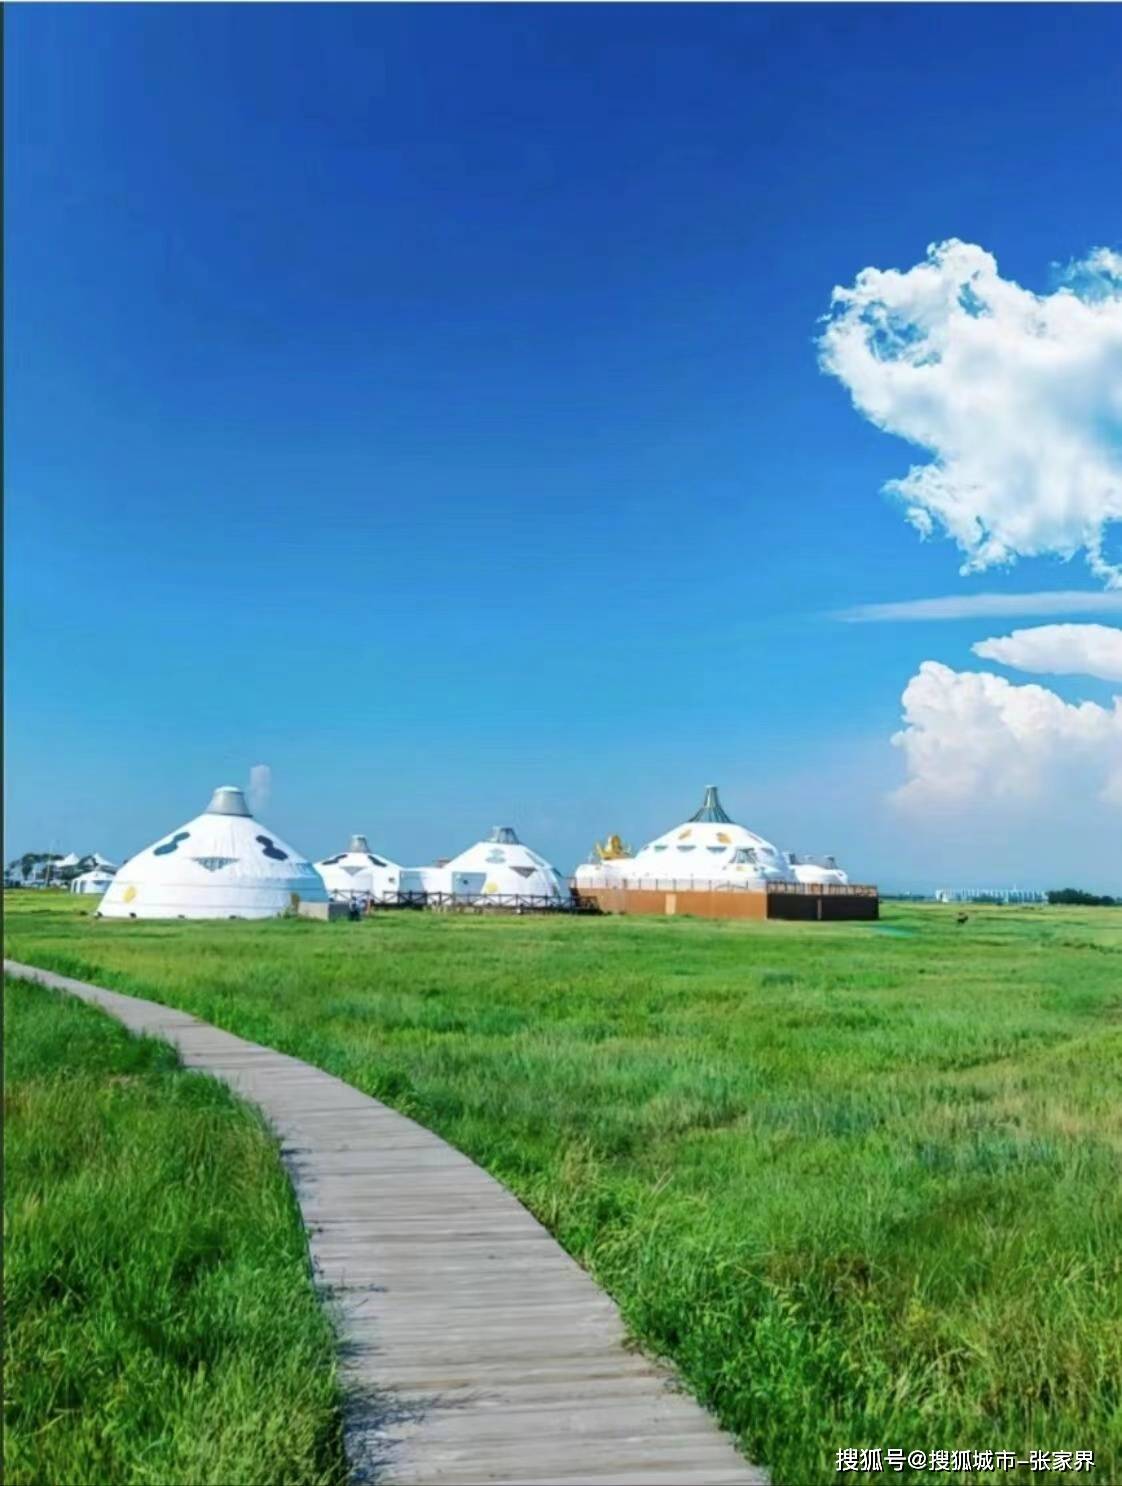 内蒙古十大旅游景点,内蒙古旅游5天4晚品质游,看完一起游内蒙